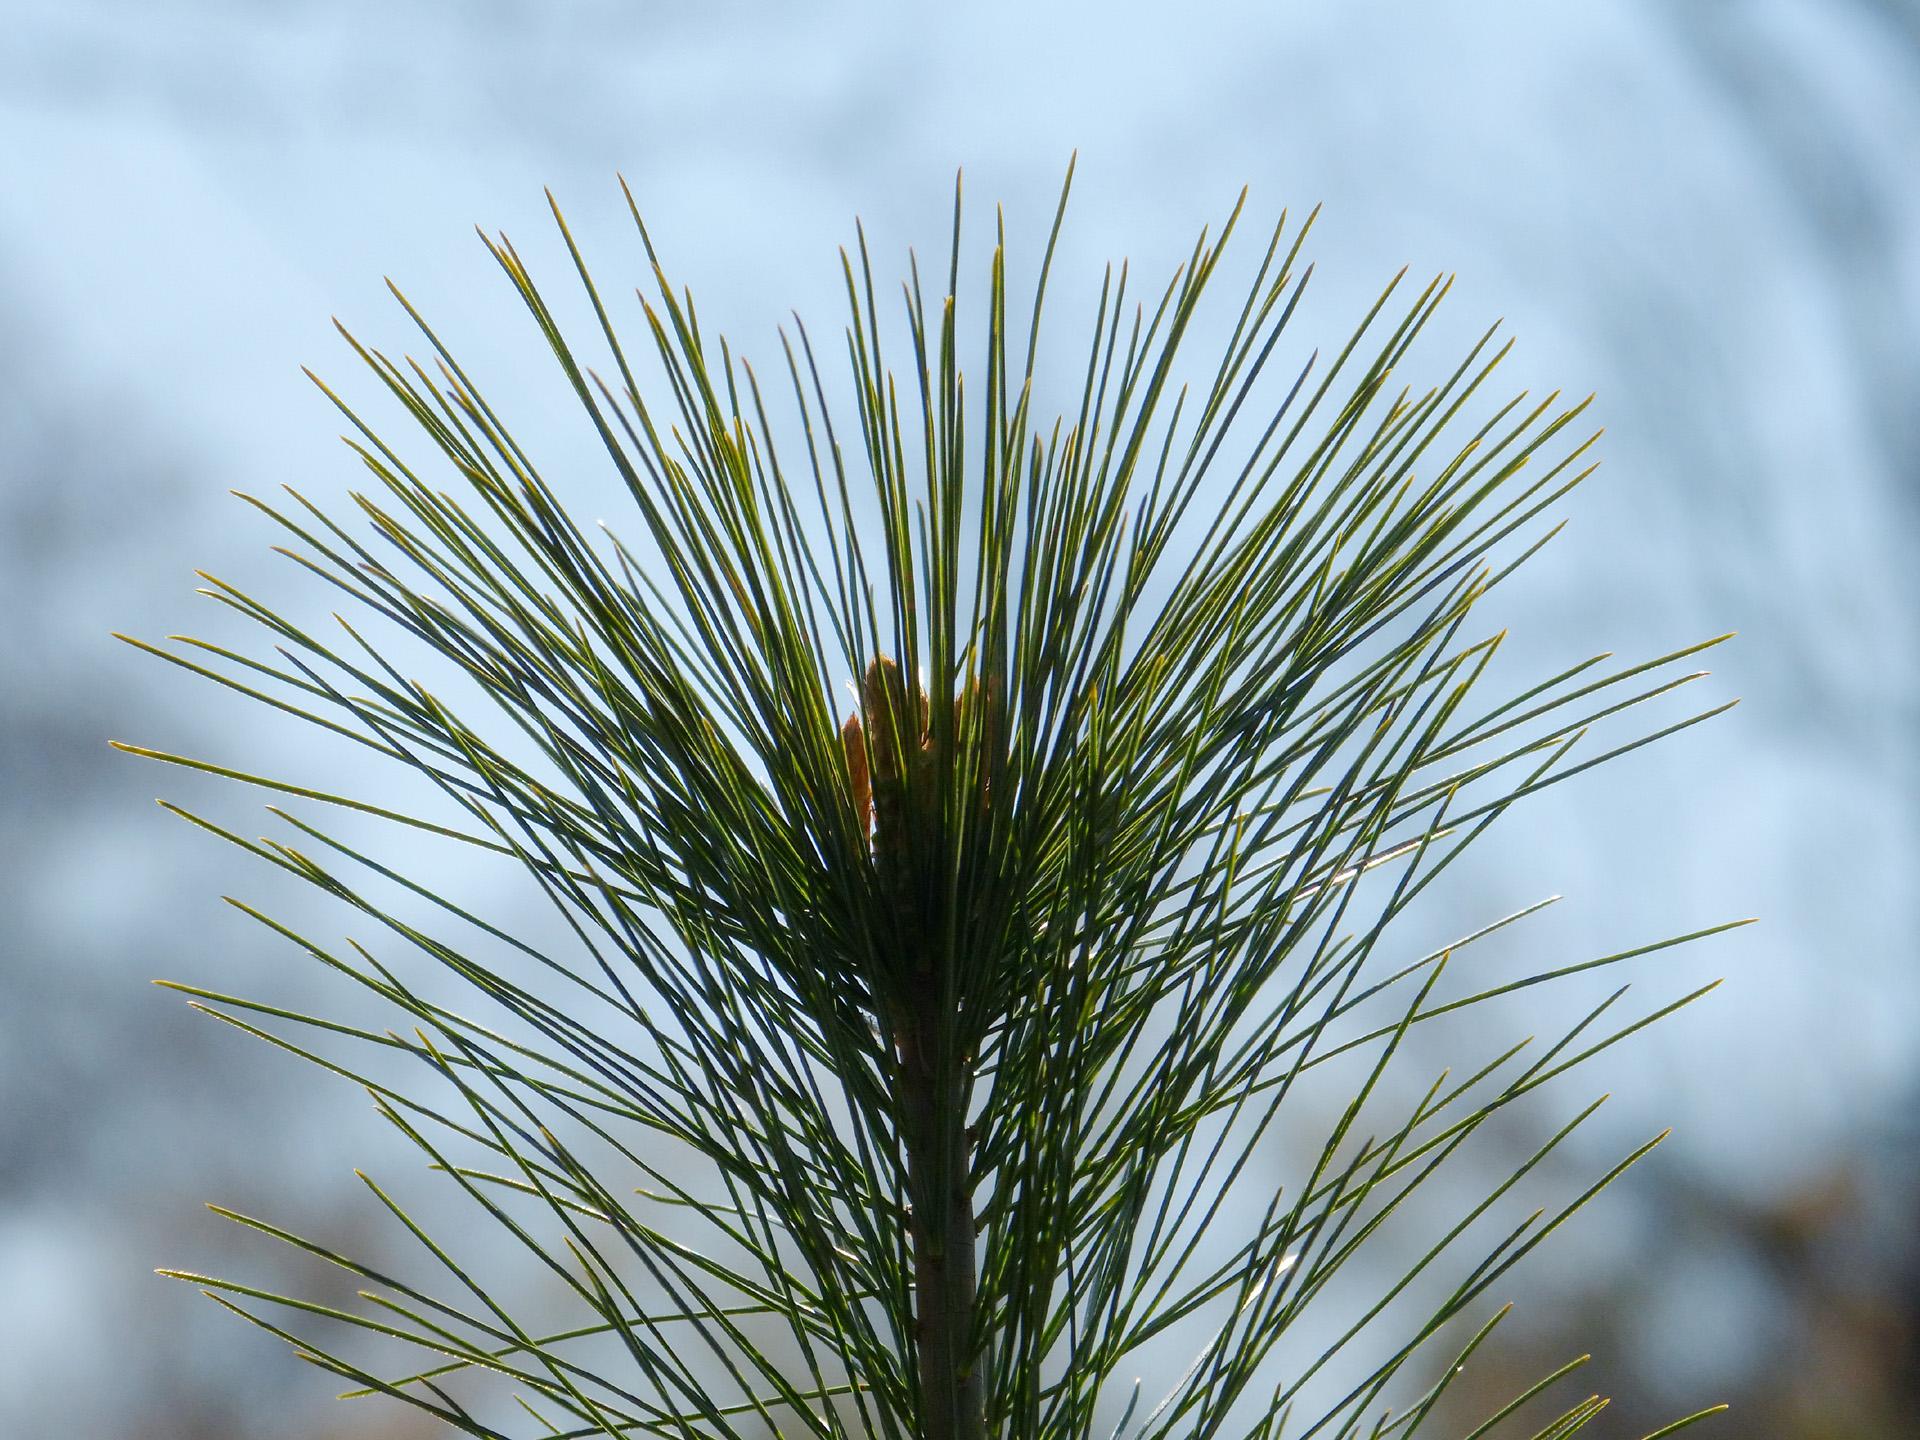 White Pine needles. Photo: Karen Yukich